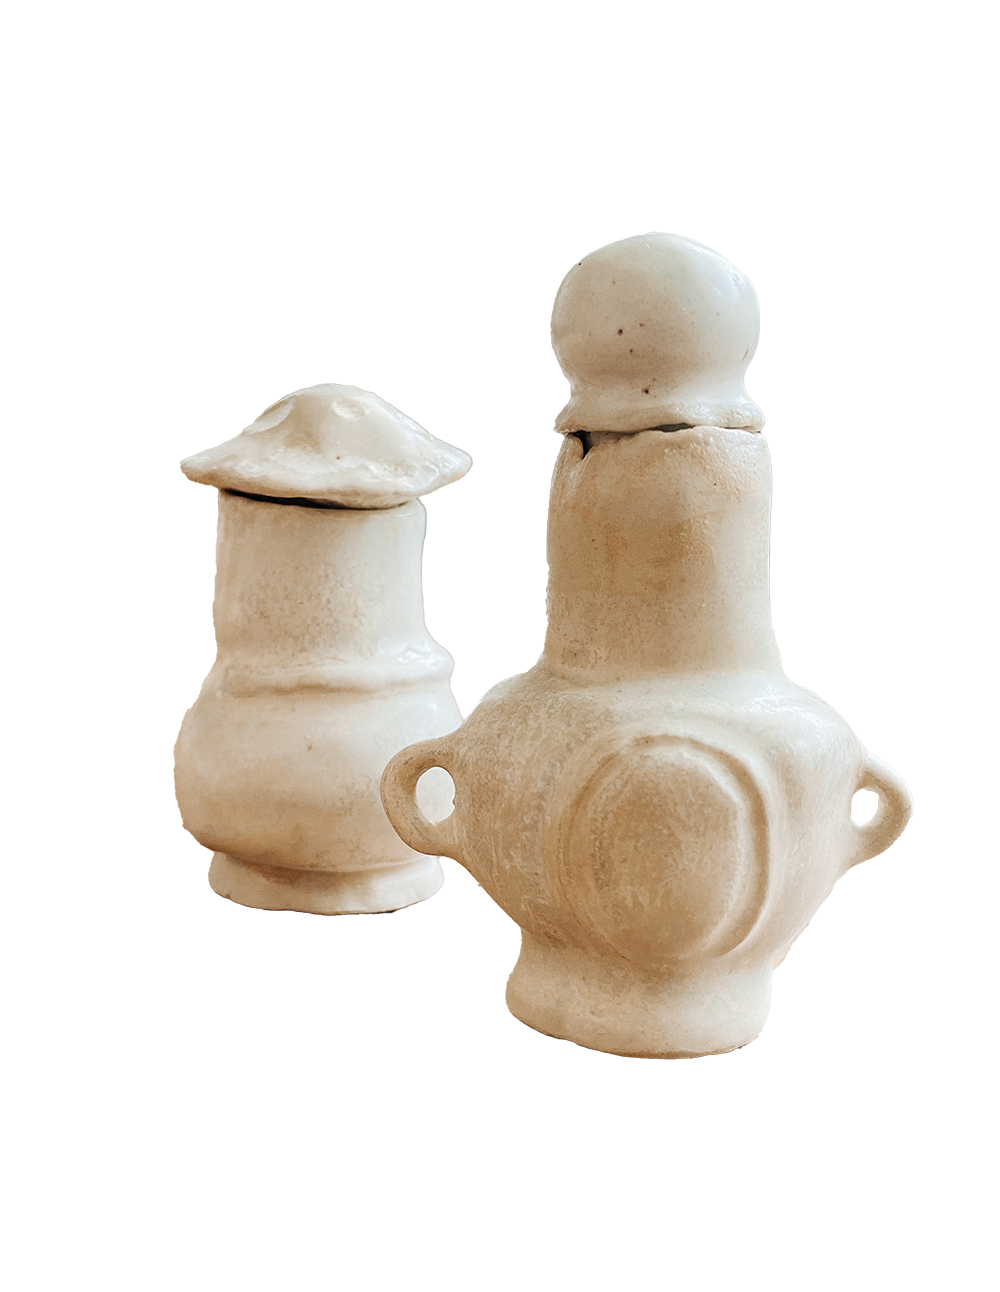 Ceramics – Quiversmiths